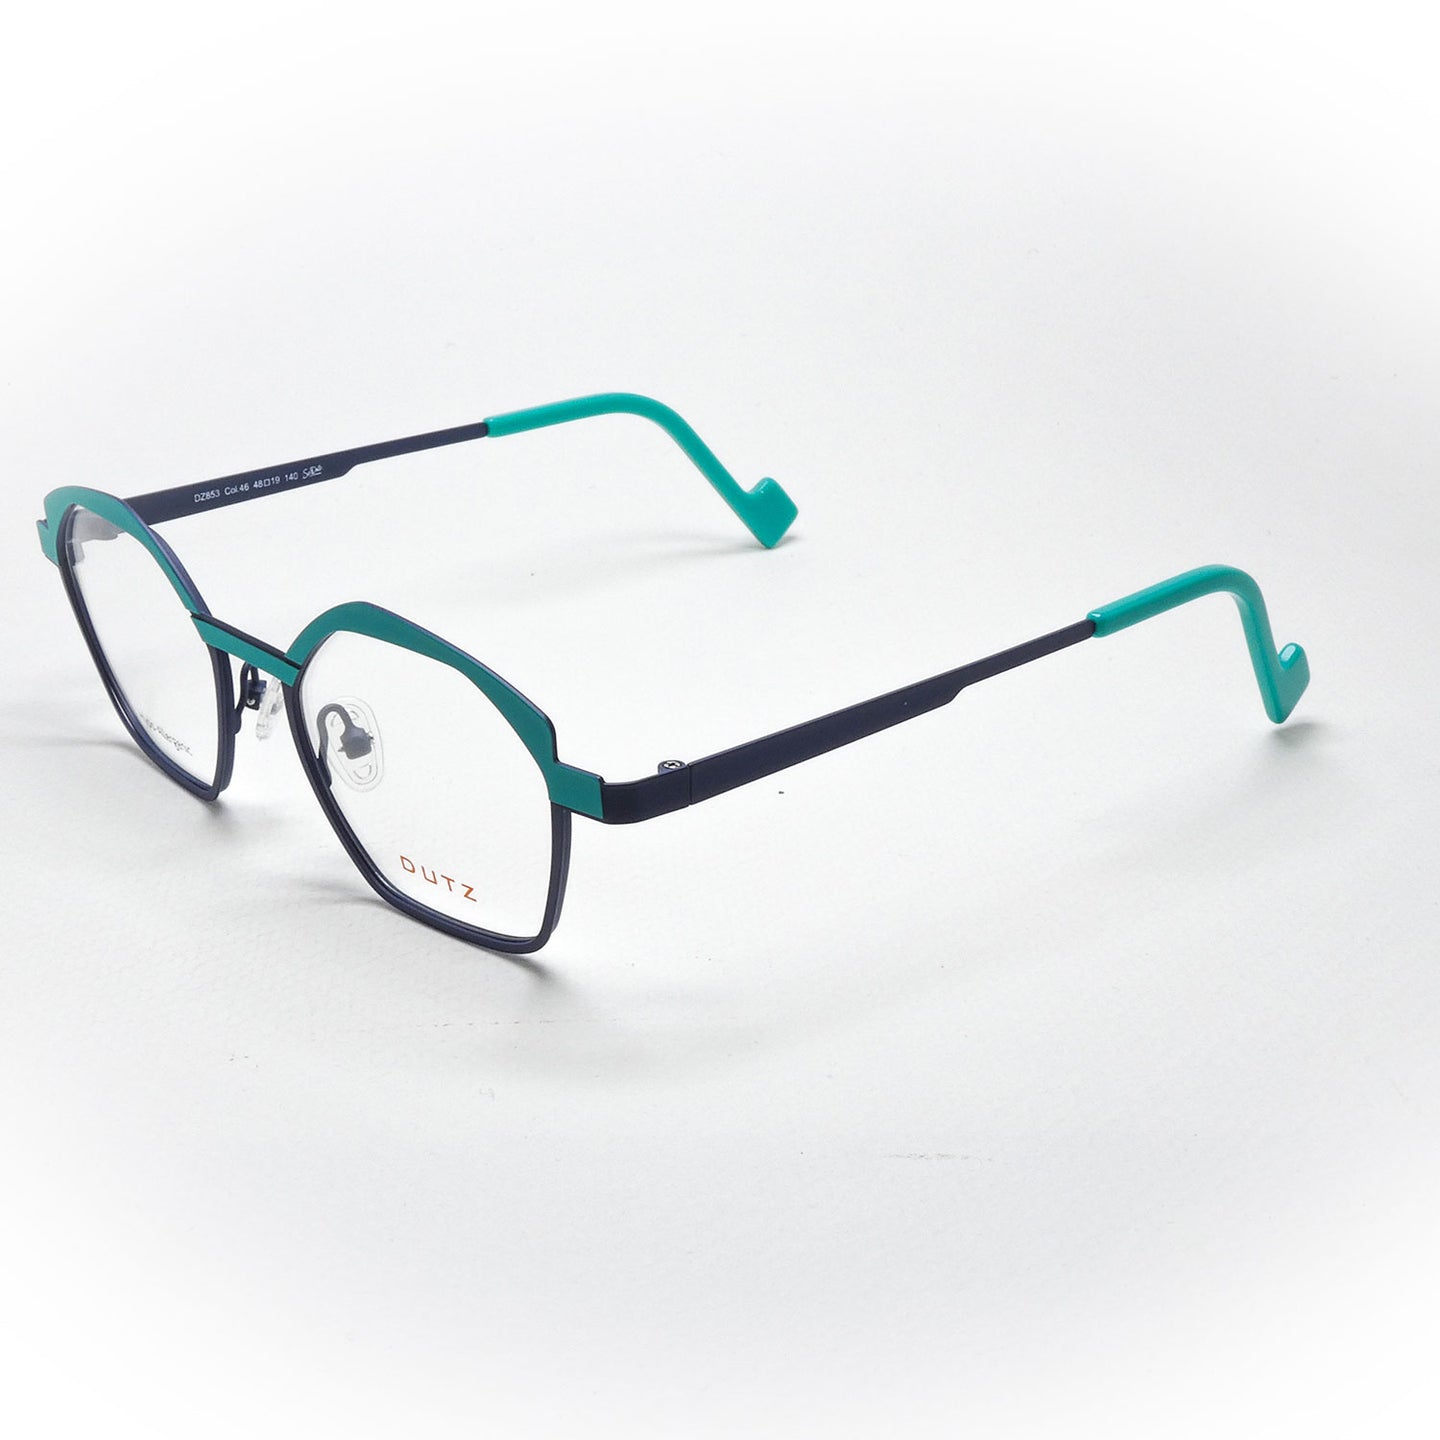 Eyeglasses Dutz model DZ 853 color 46